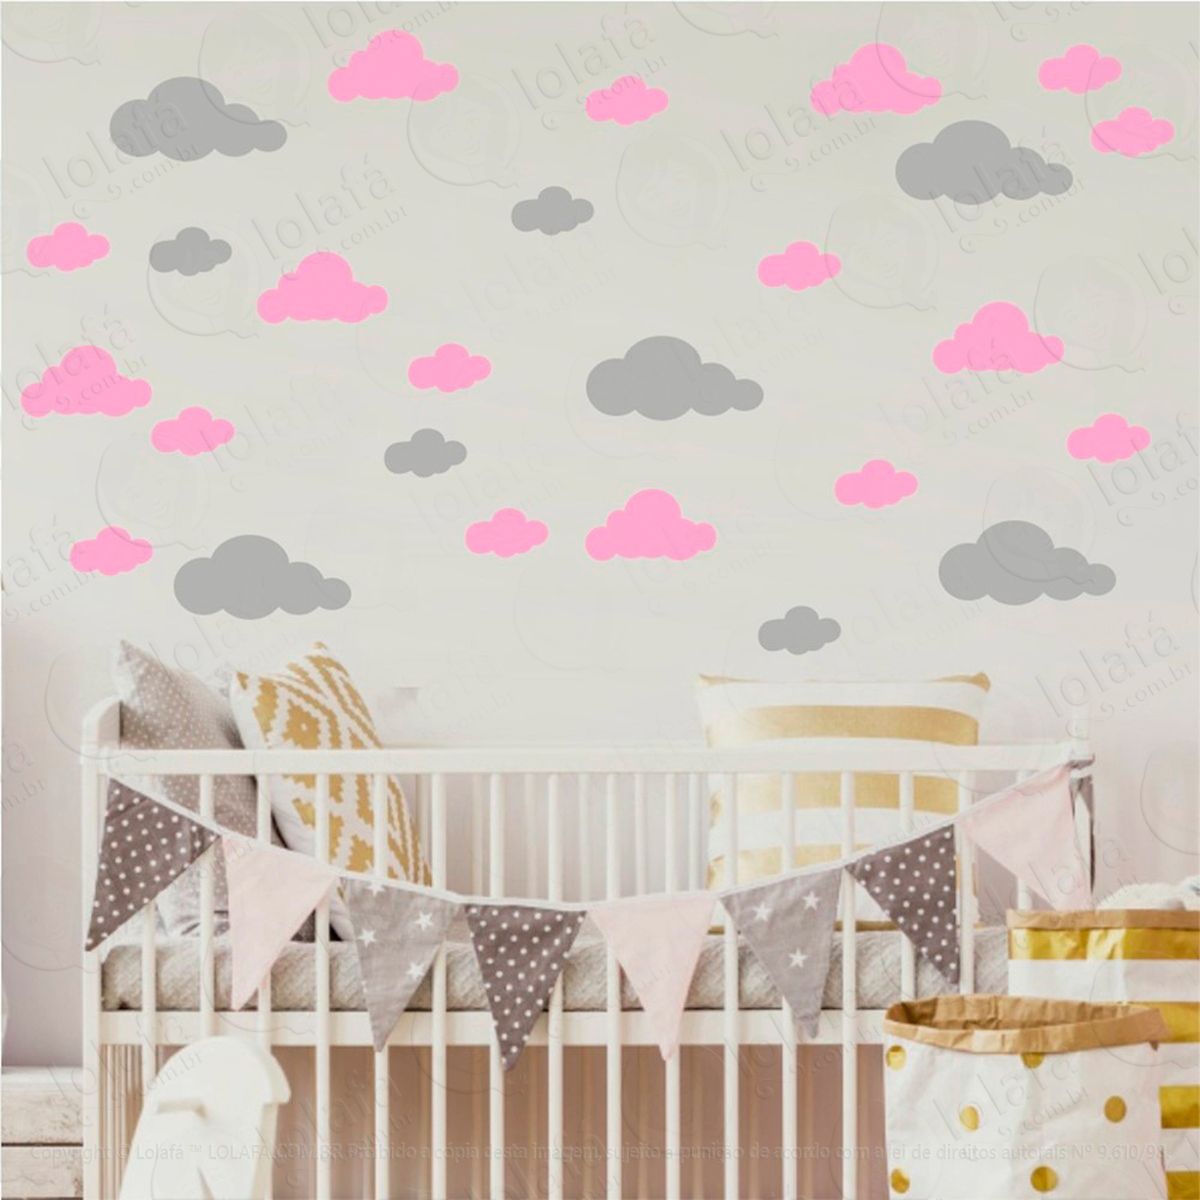 adesivos nuvens 40 peças adesivos para quarto de bebê infantil - mod:1041